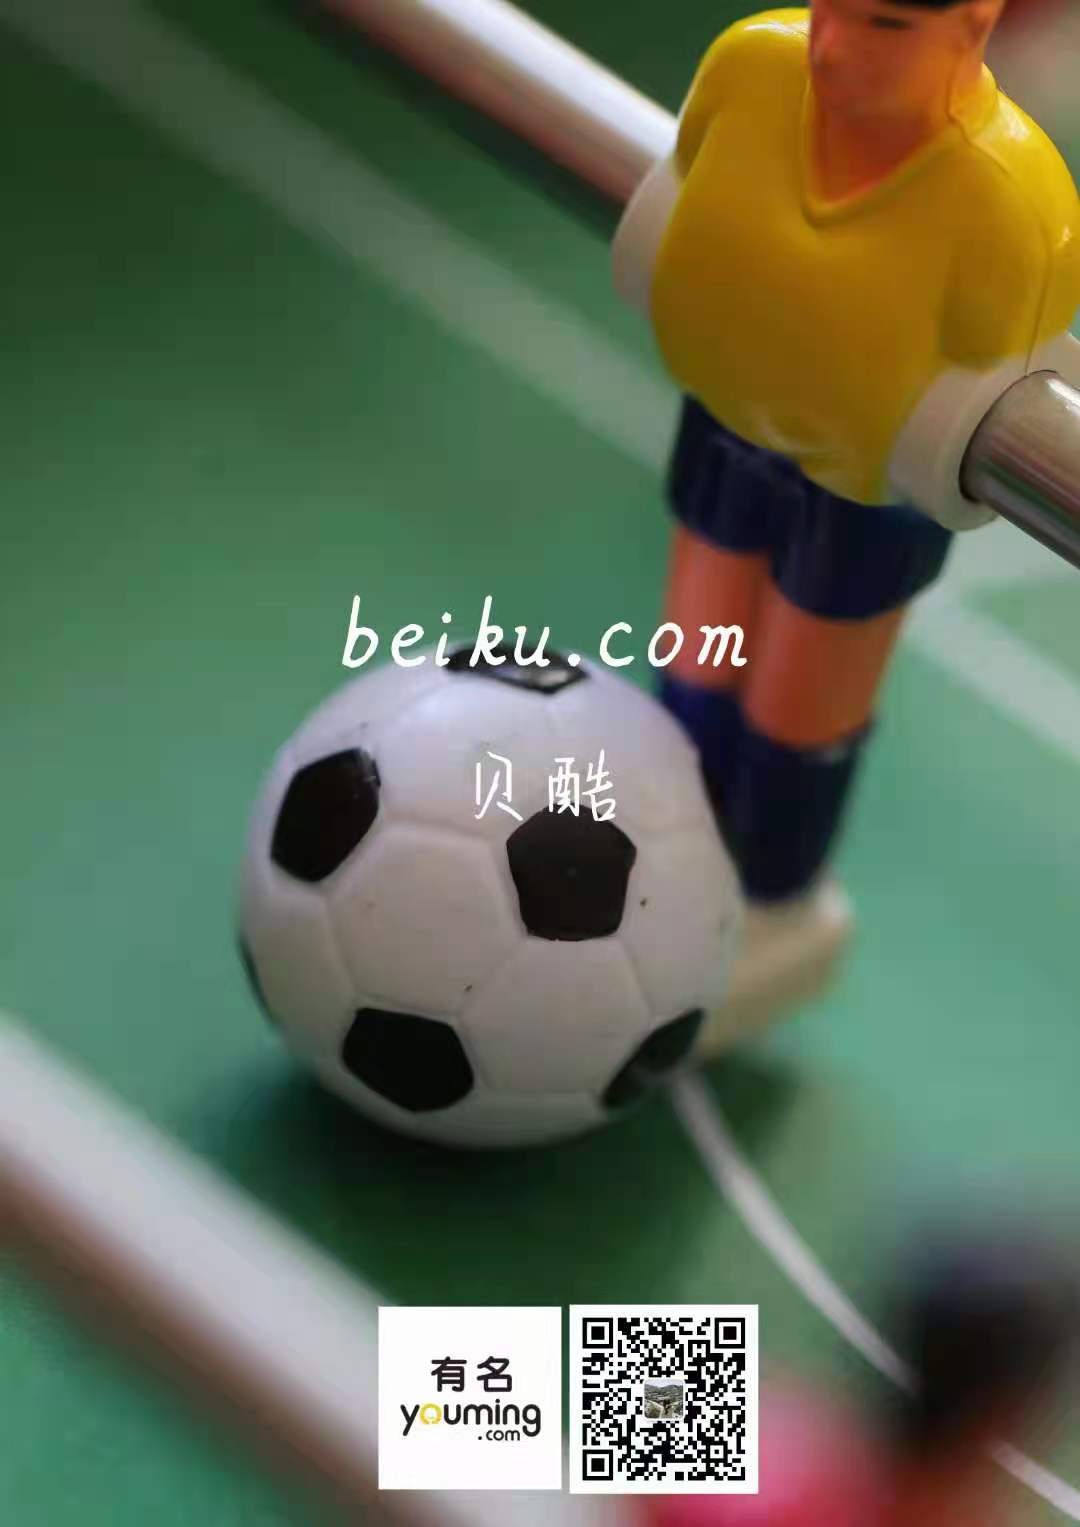 beiku.com